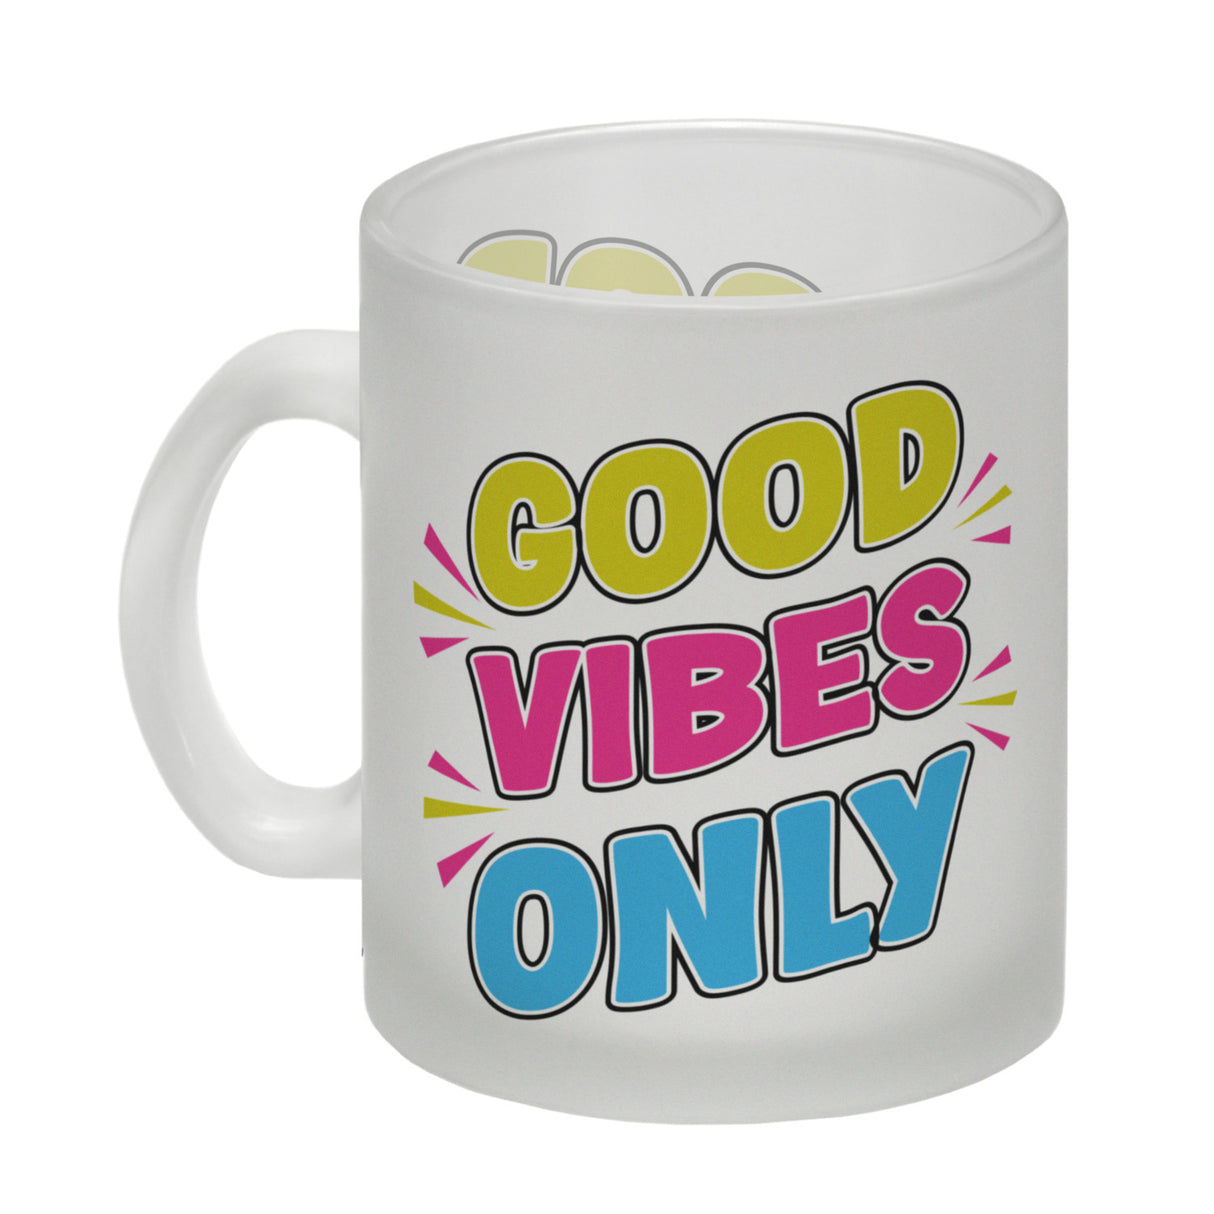 Good Vibes Only Kaffeebecher mit Spruch für Arbeitskollegen